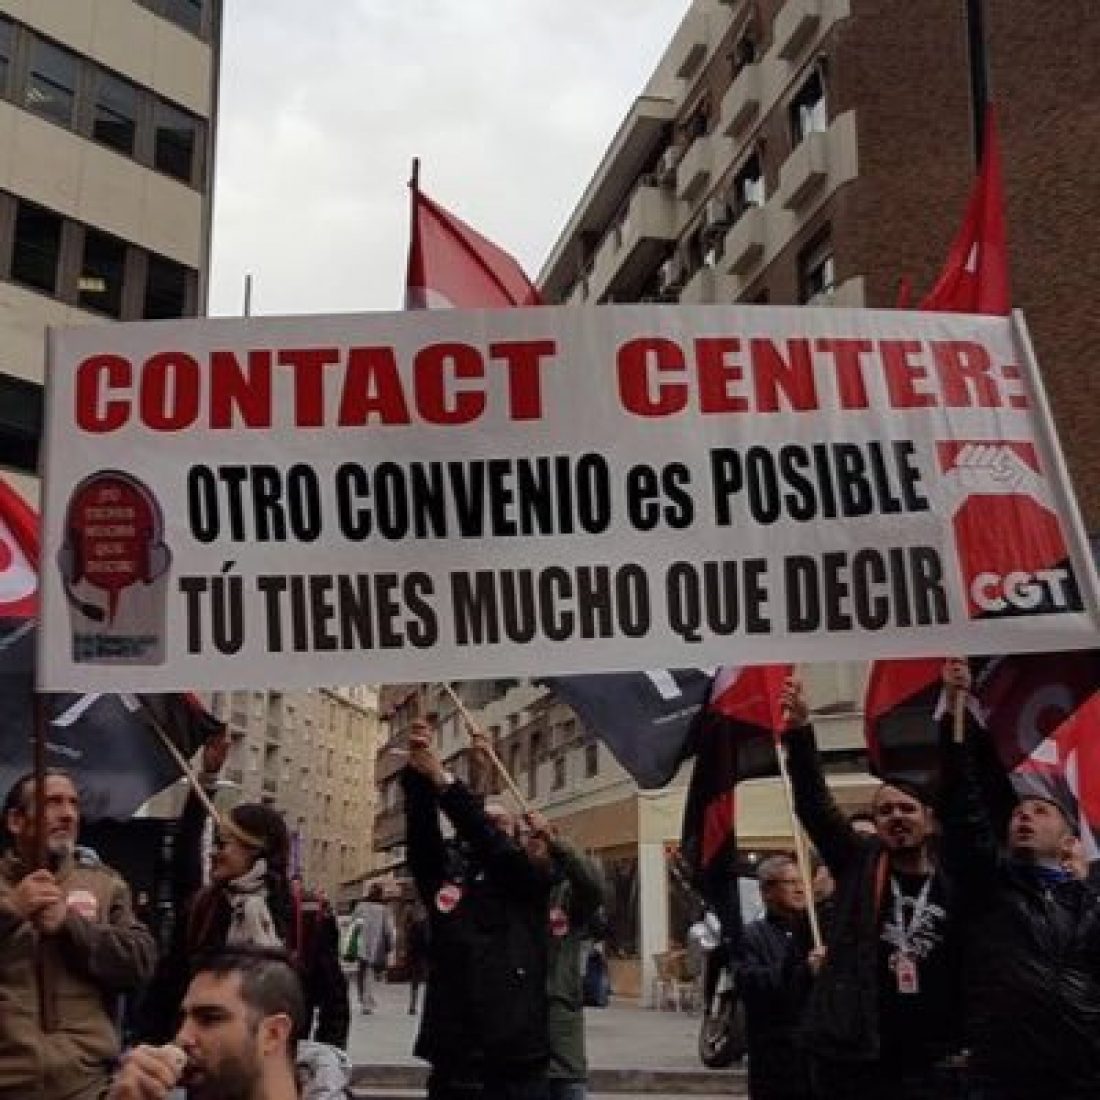 CGT convoca una nueva huelga general de 24 horas en el sector del Contac Center